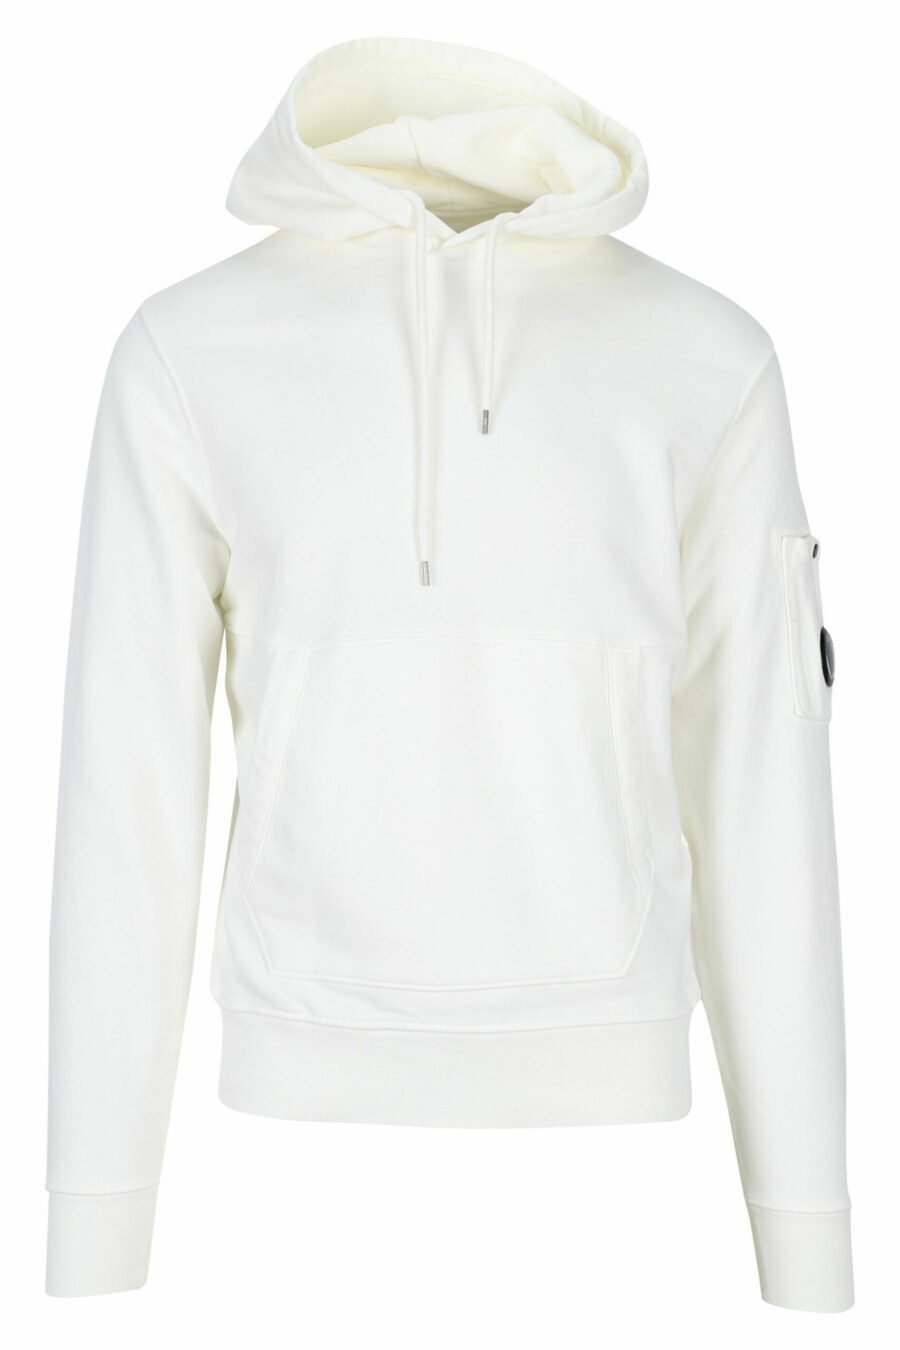 Sweat-shirt à capuche blanc avec logo latéral - 7620943597783 scaled